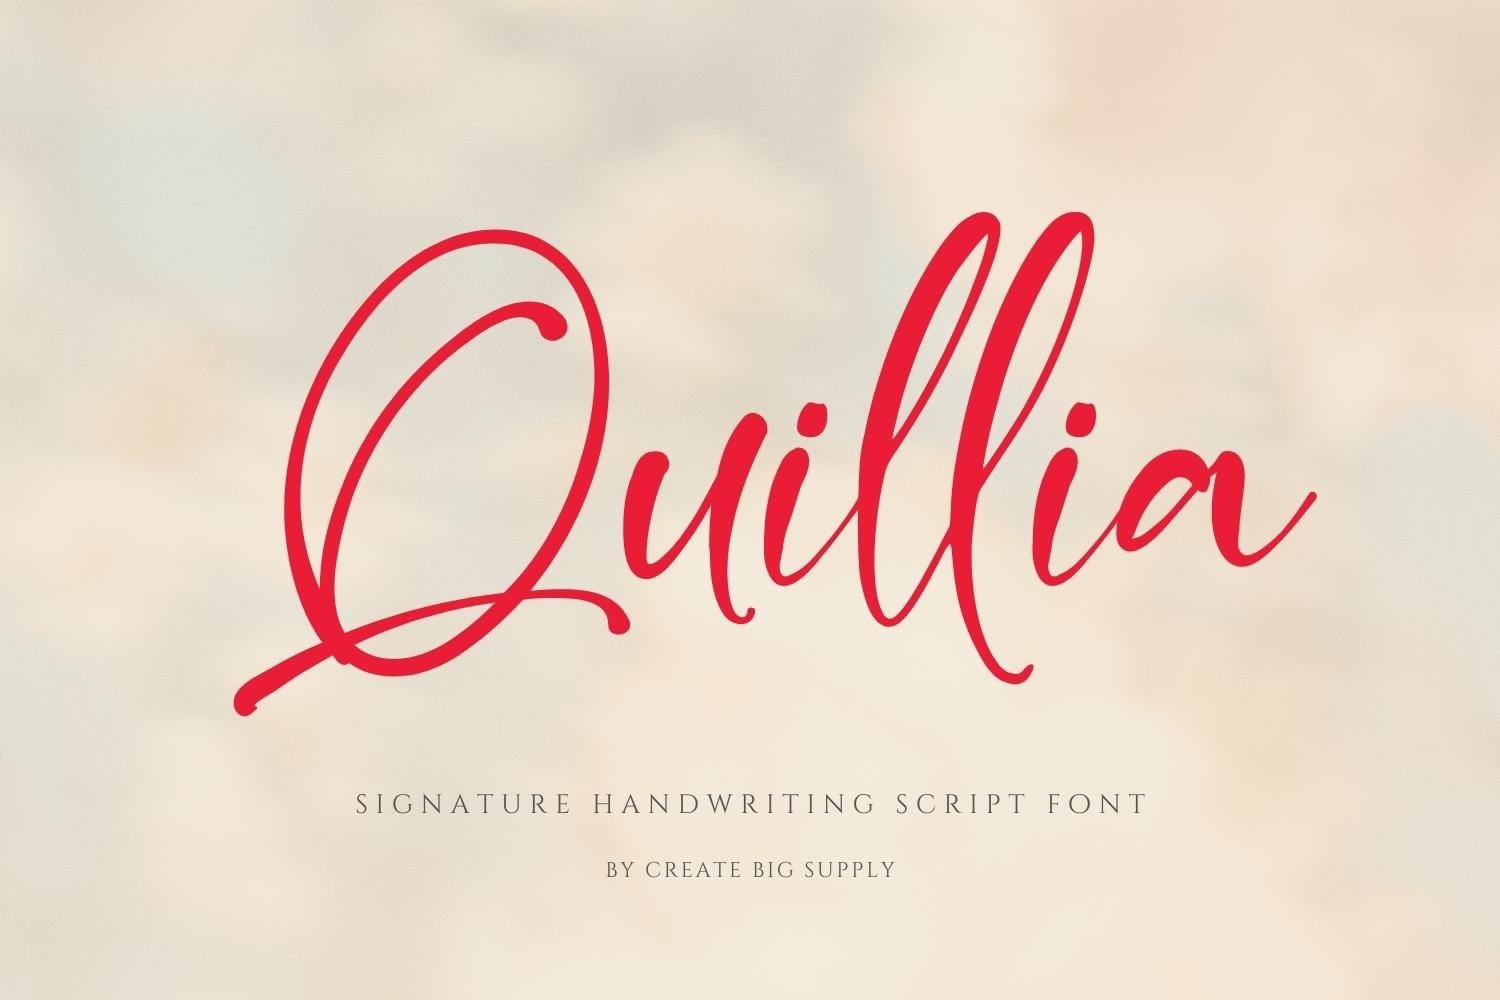 Quillia